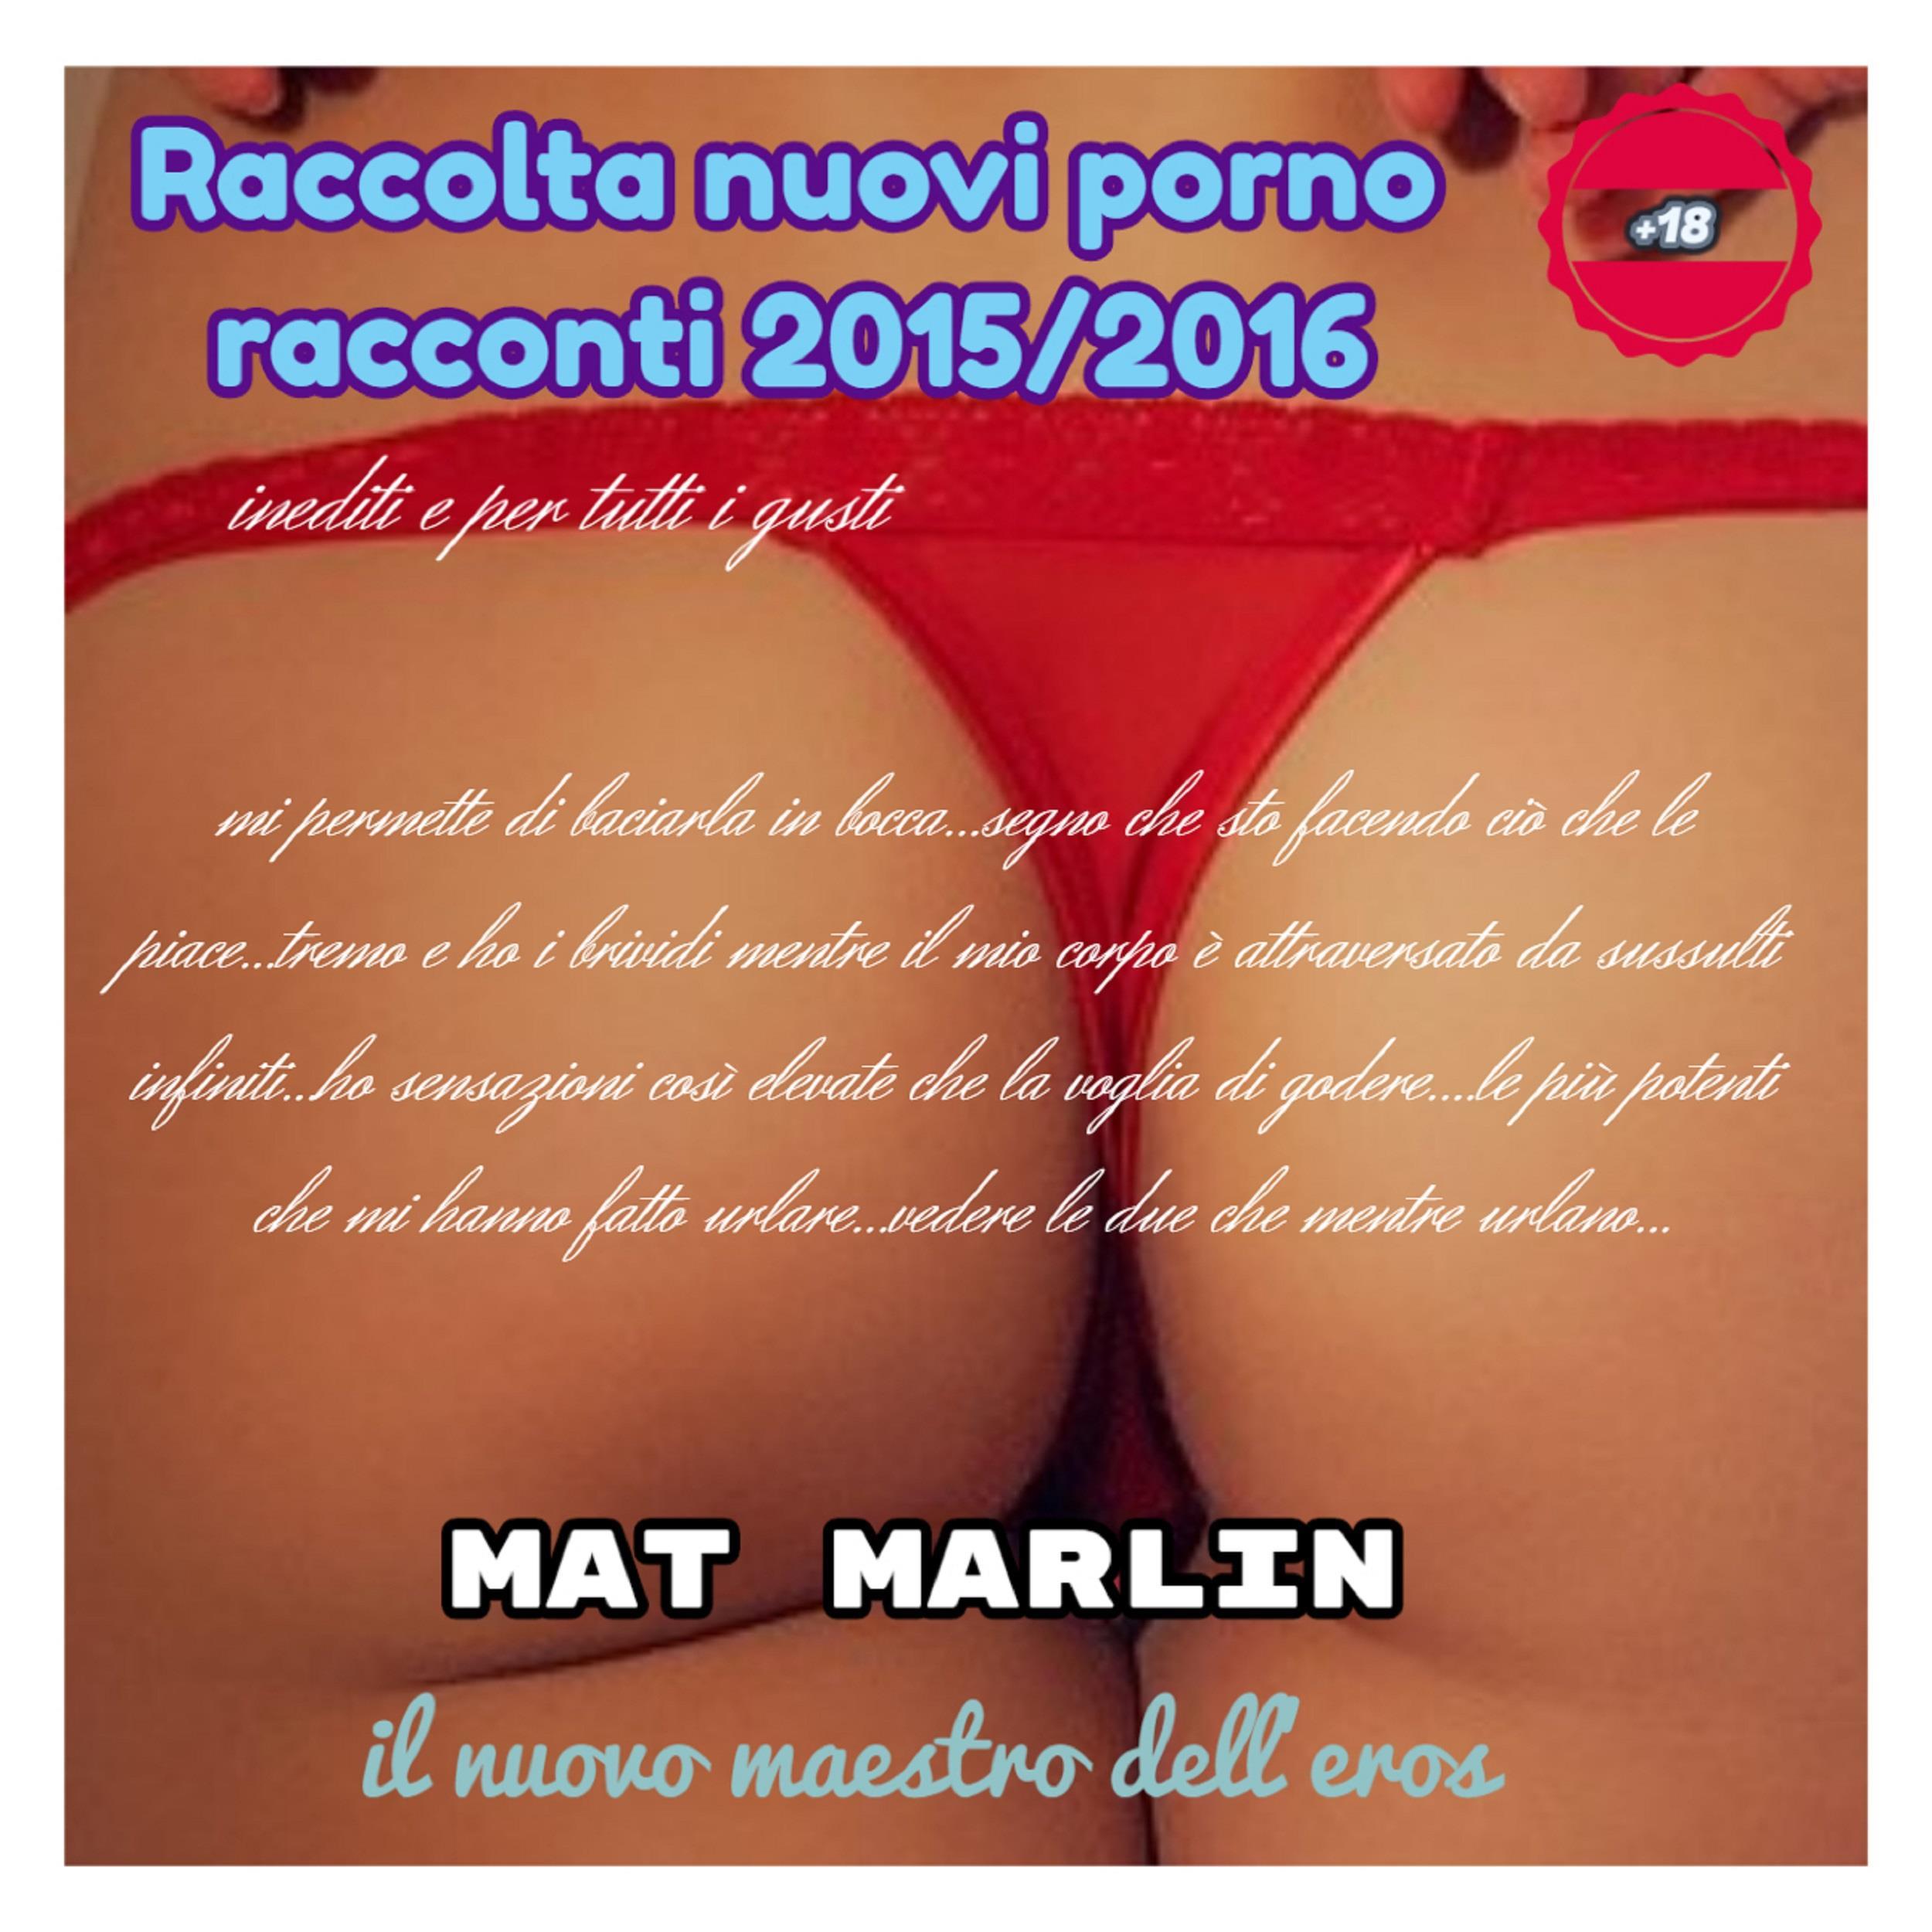 Raccolta nuovi (porno) racconti 2015/2016 [Mat Marlin]